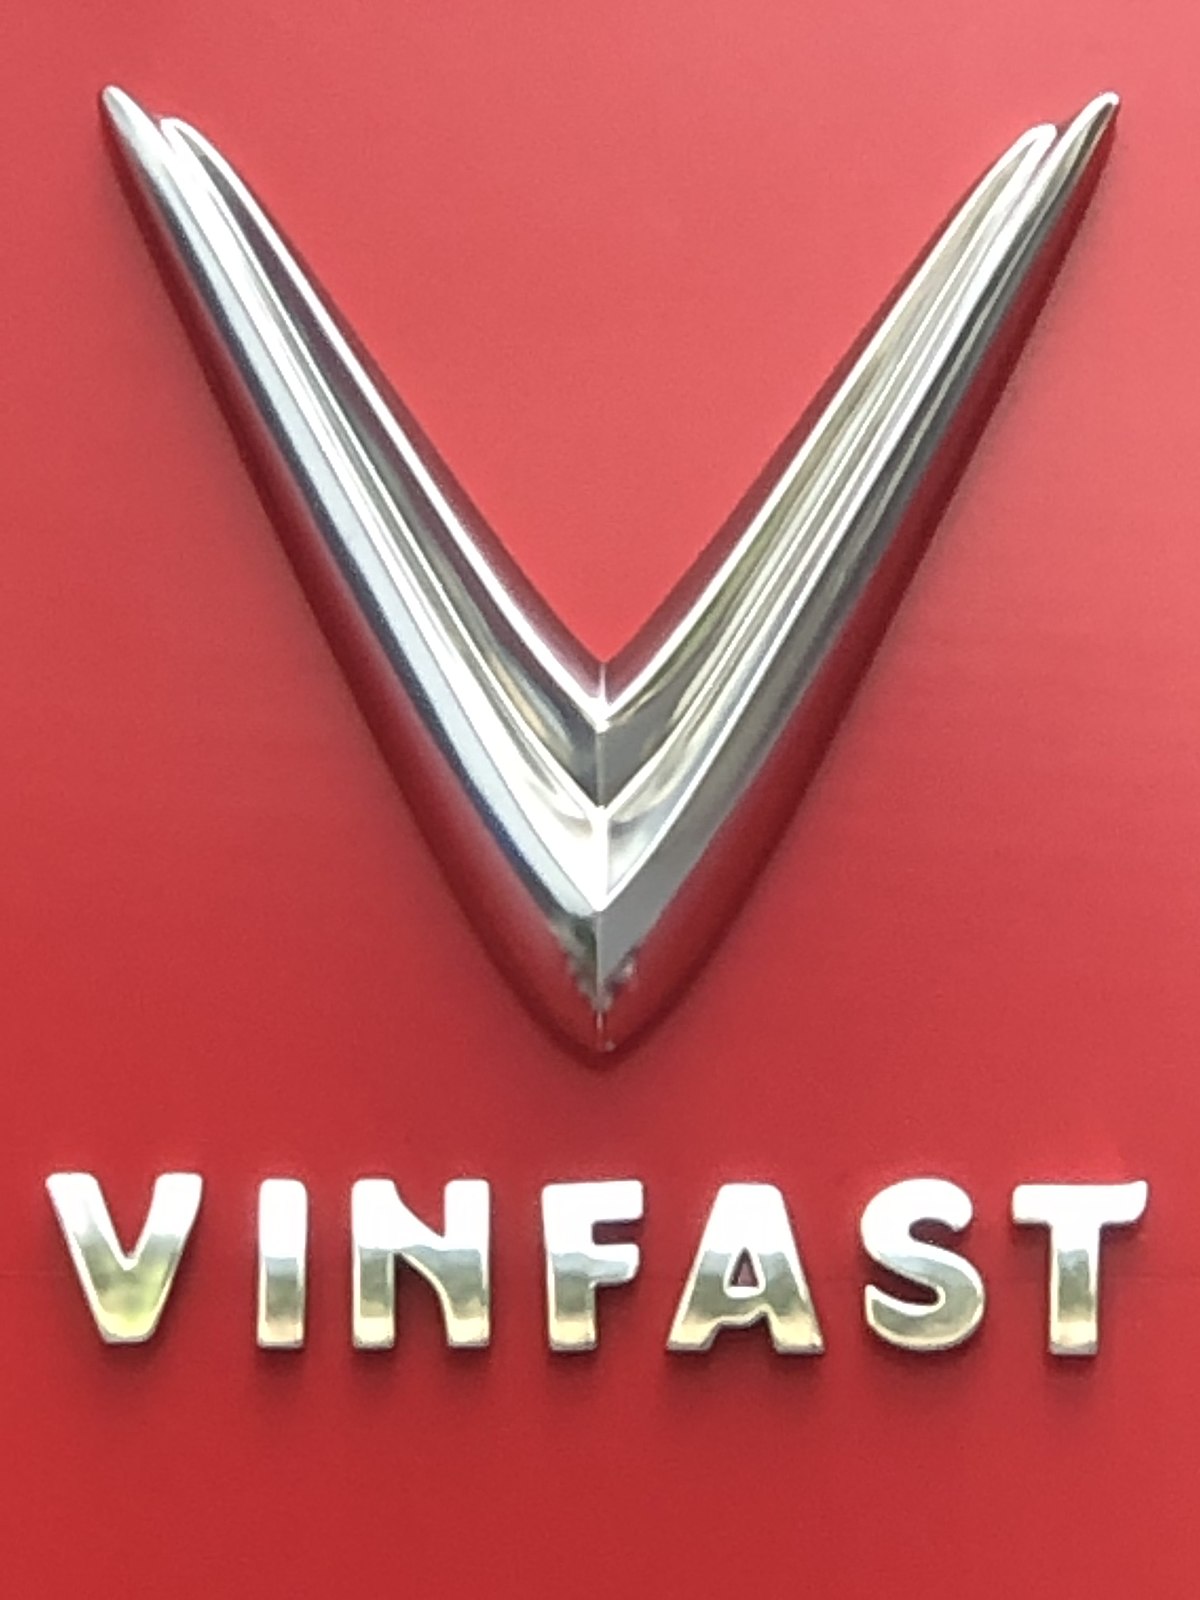 VinFast Car Manufacturer